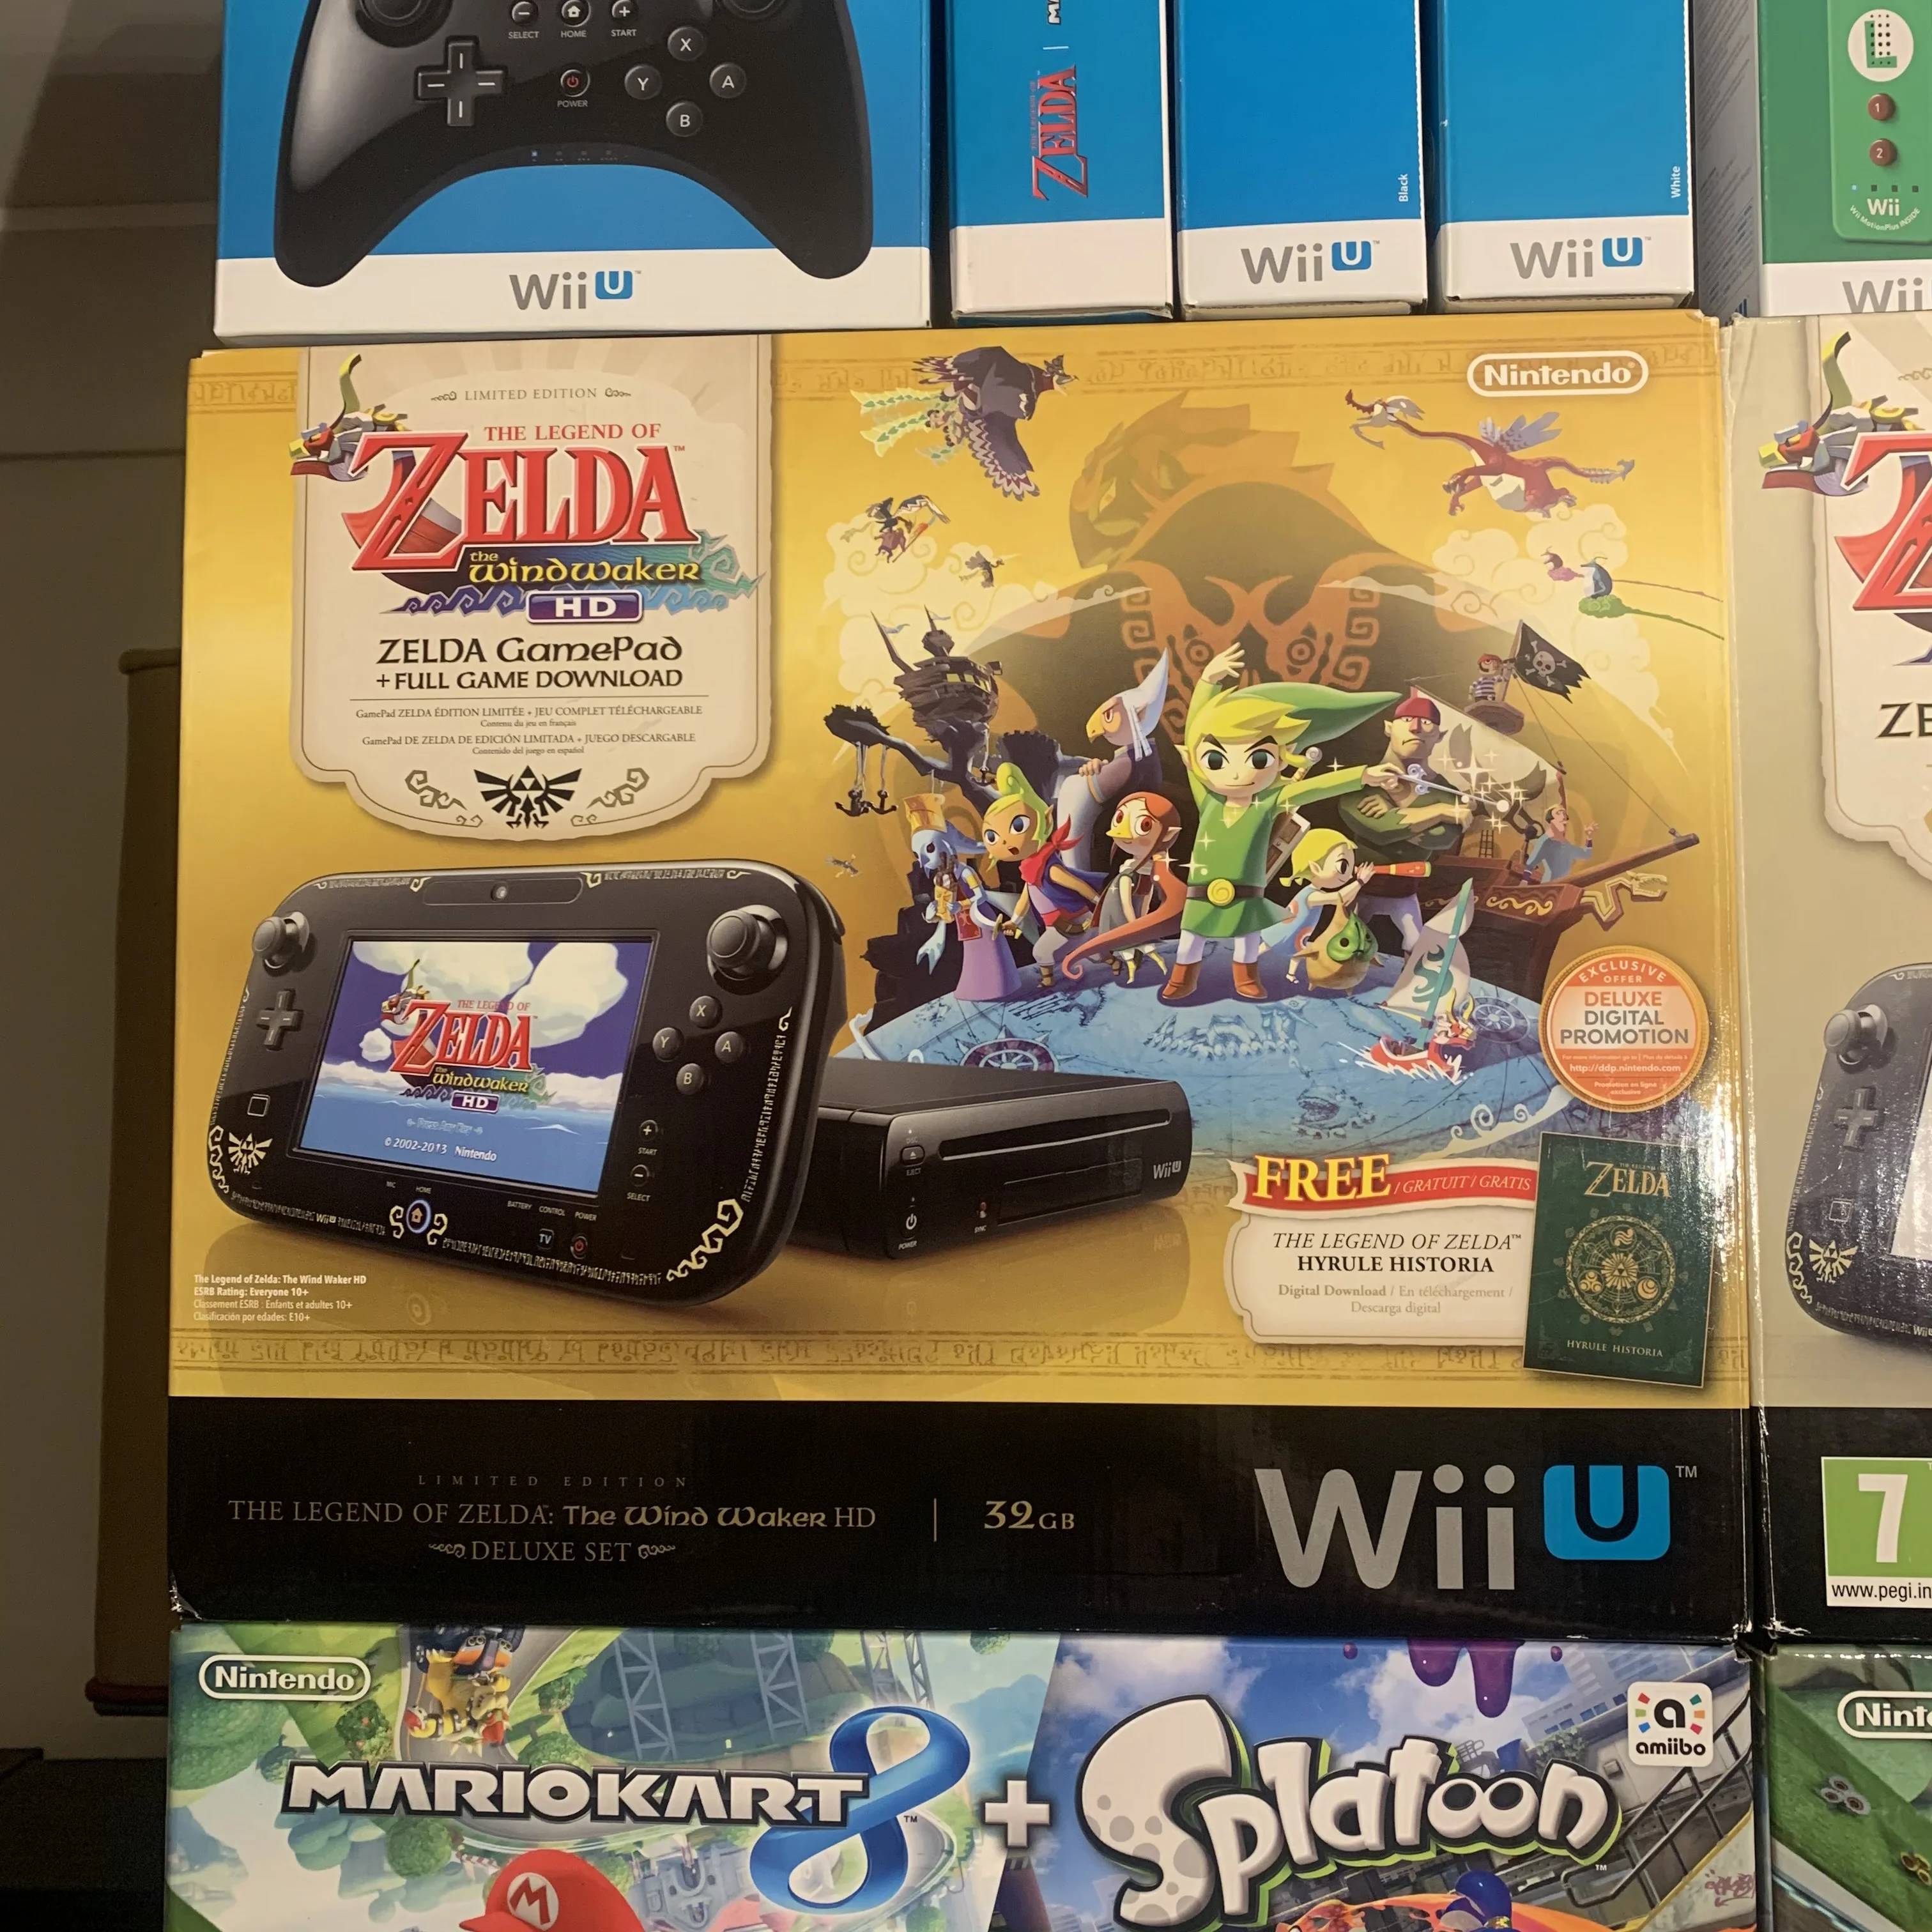  Nintendo Wii U The Legend Of Zelda The Wind Waker Deluxe Set [NA]